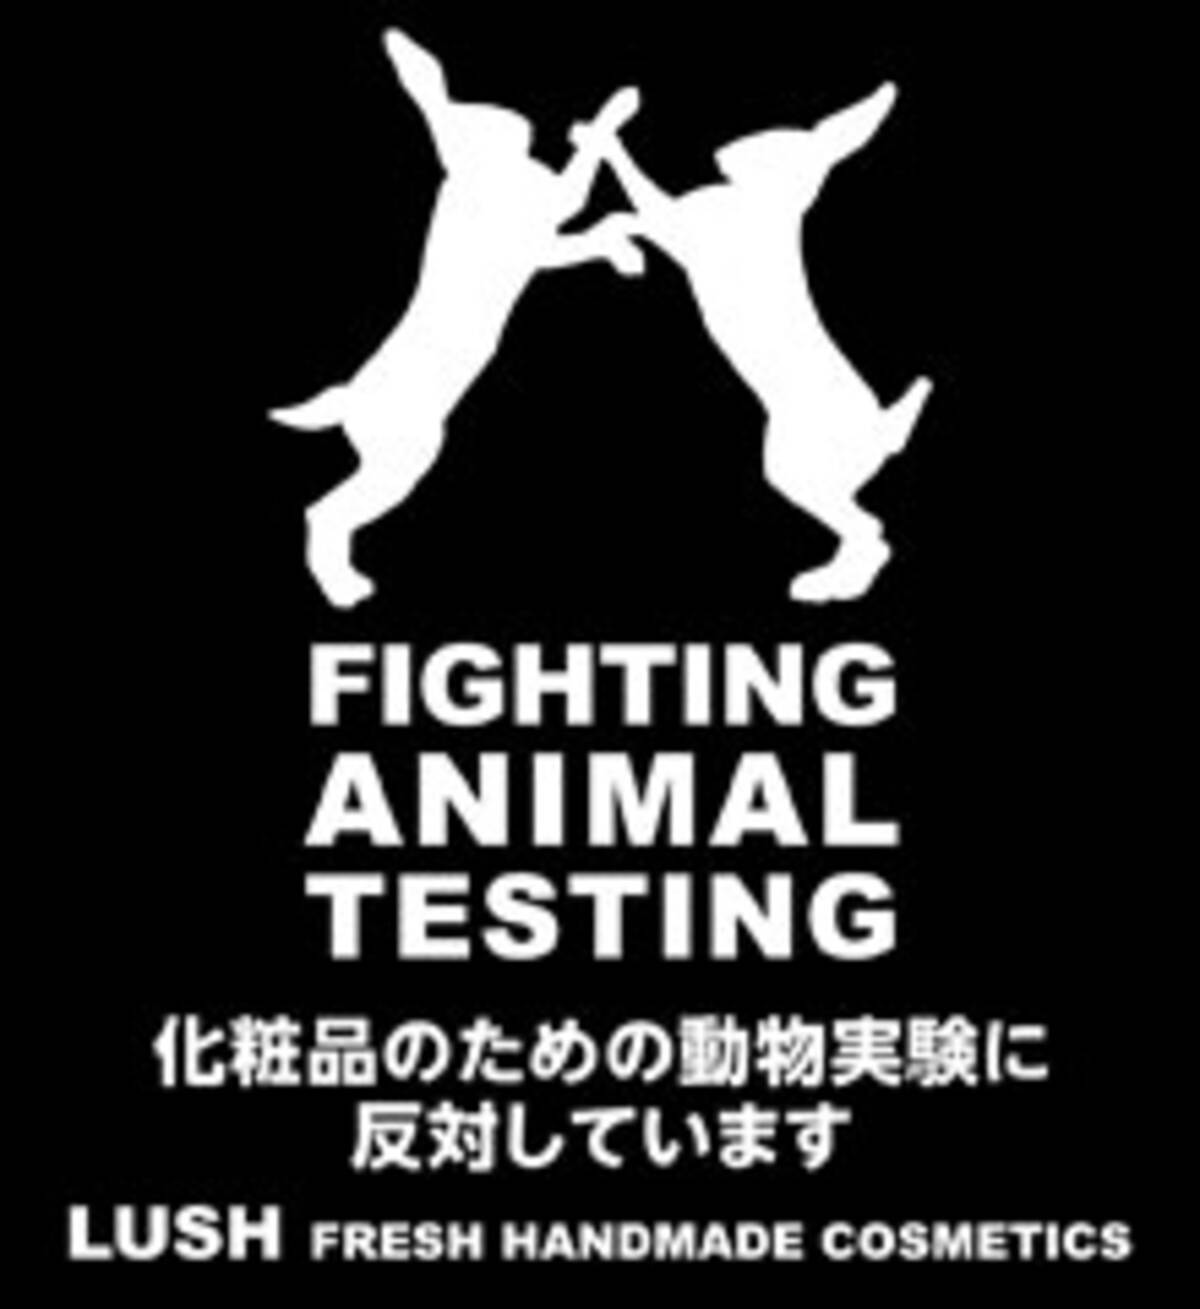 アースデイ東京13 で化粧品のための動物実験反対のメッセージを発信 13年3月26日 エキサイトニュース